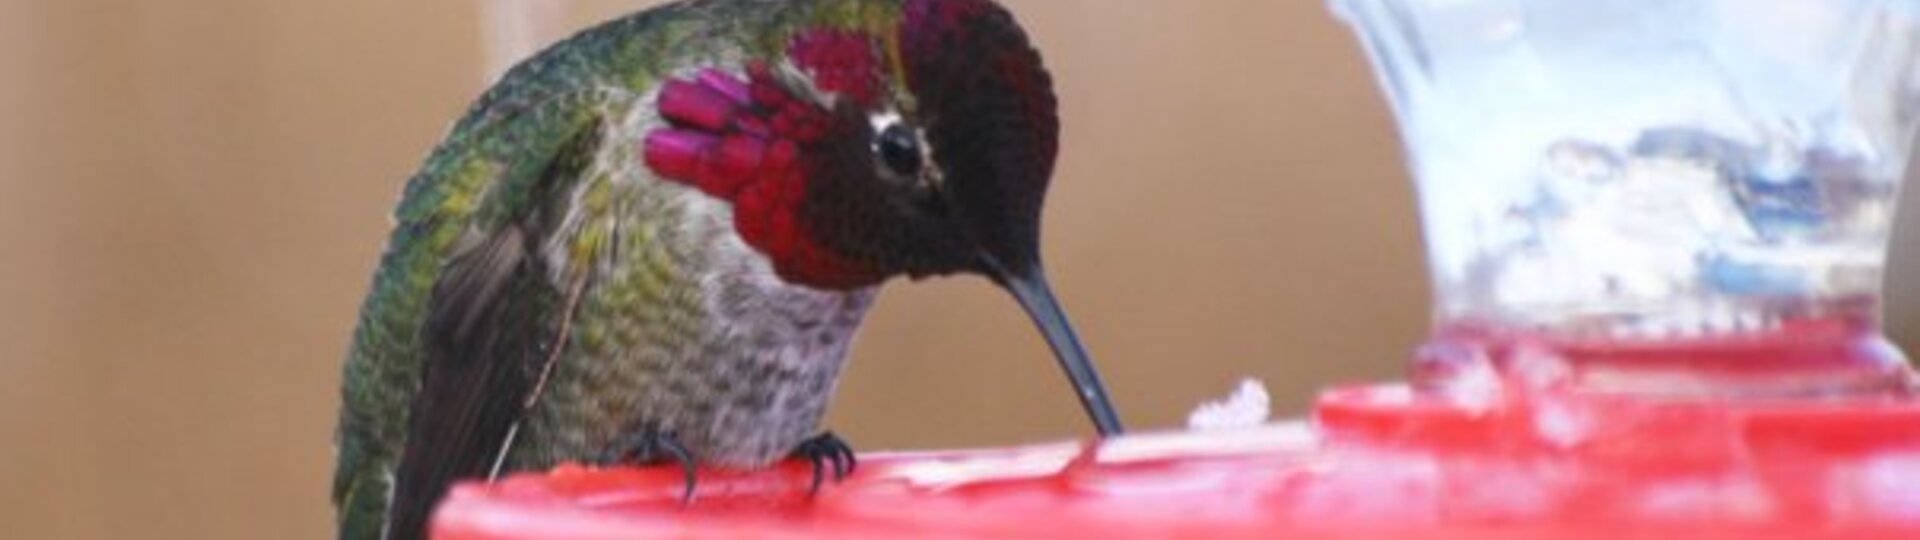 Hummingbird drinking from a feeder